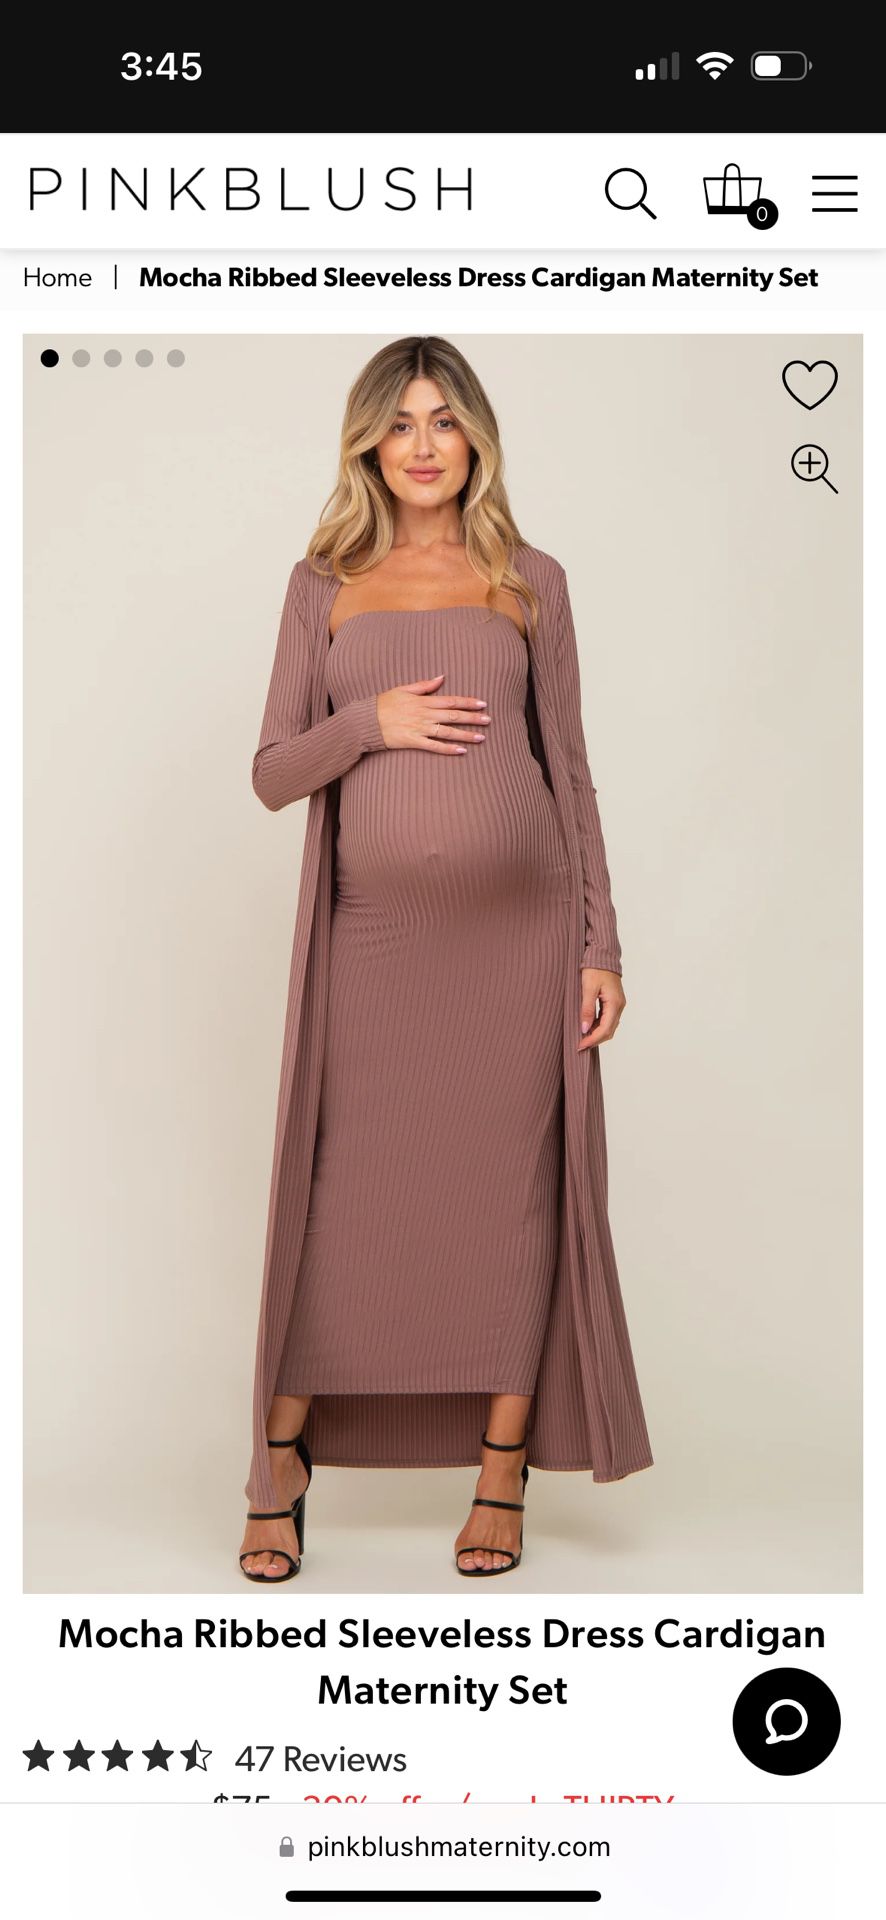 Pinkblush Maternity Dress / Maternity Set (Size Medium)